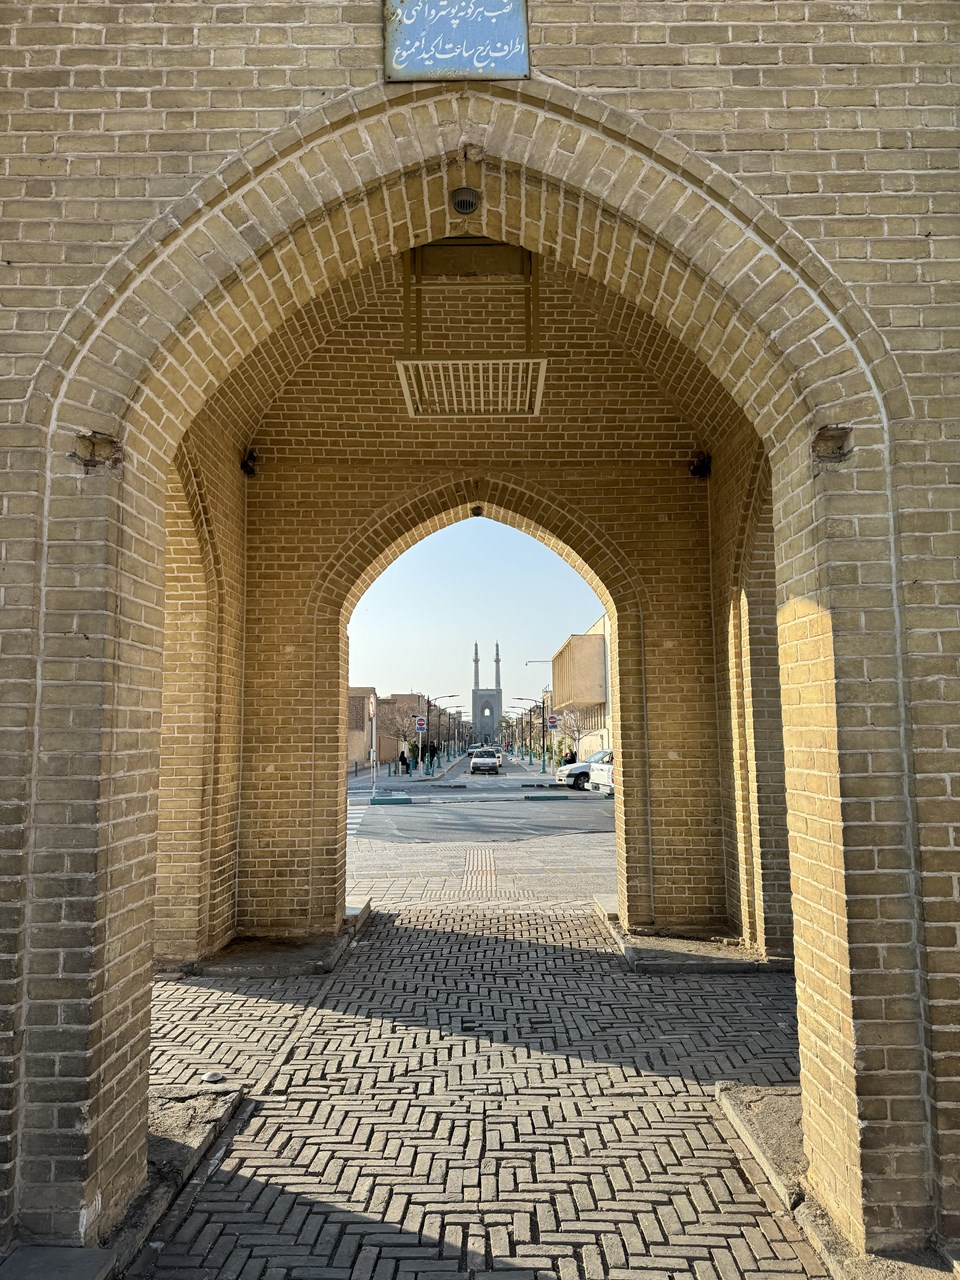 İran'daki Cuma Cami farklı dönemlerin mimari özelliklerini yansıtıyor - 2